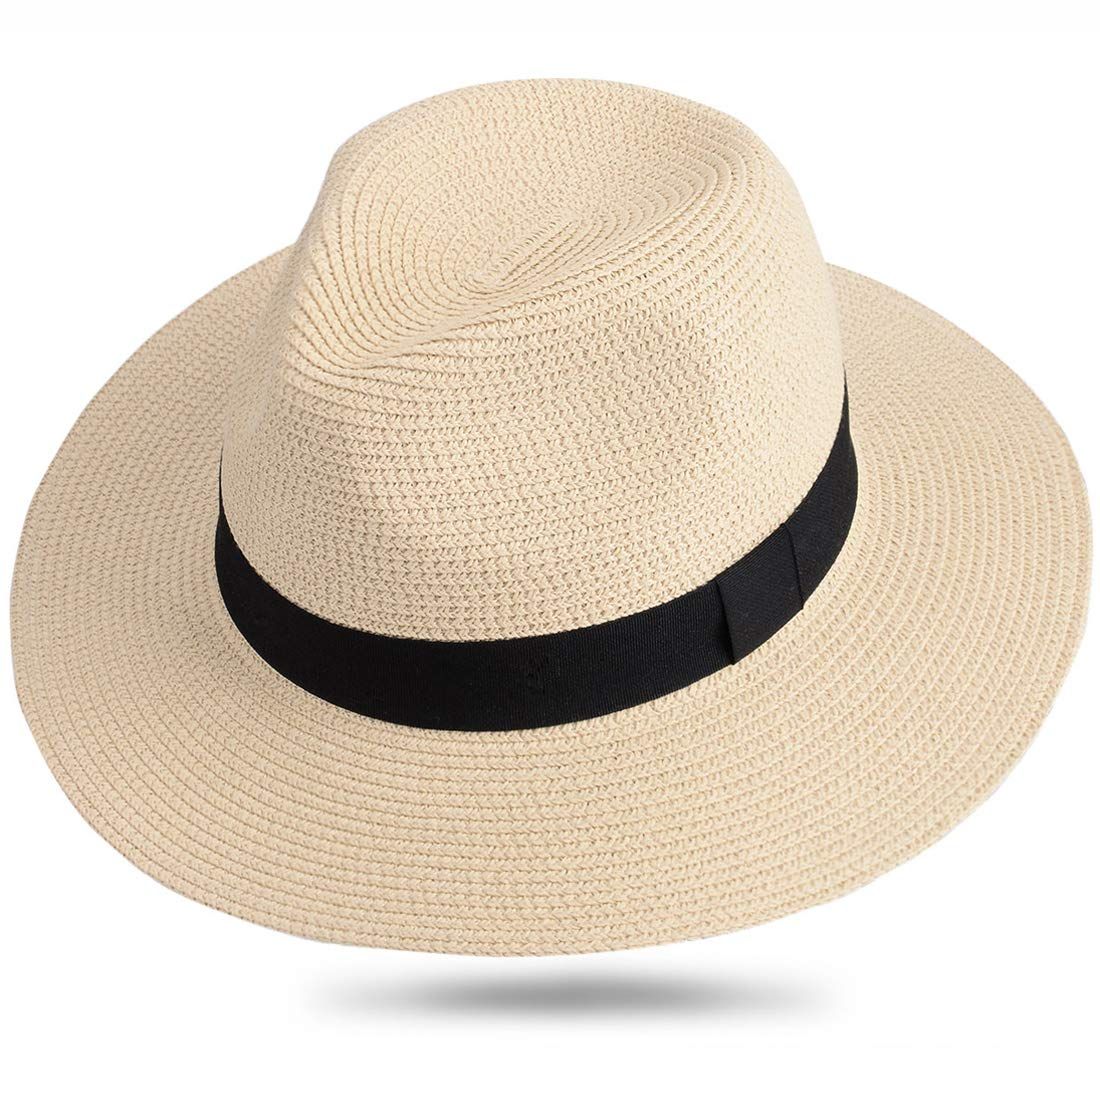 Sombreros de verano para hombre - los tipos y usos